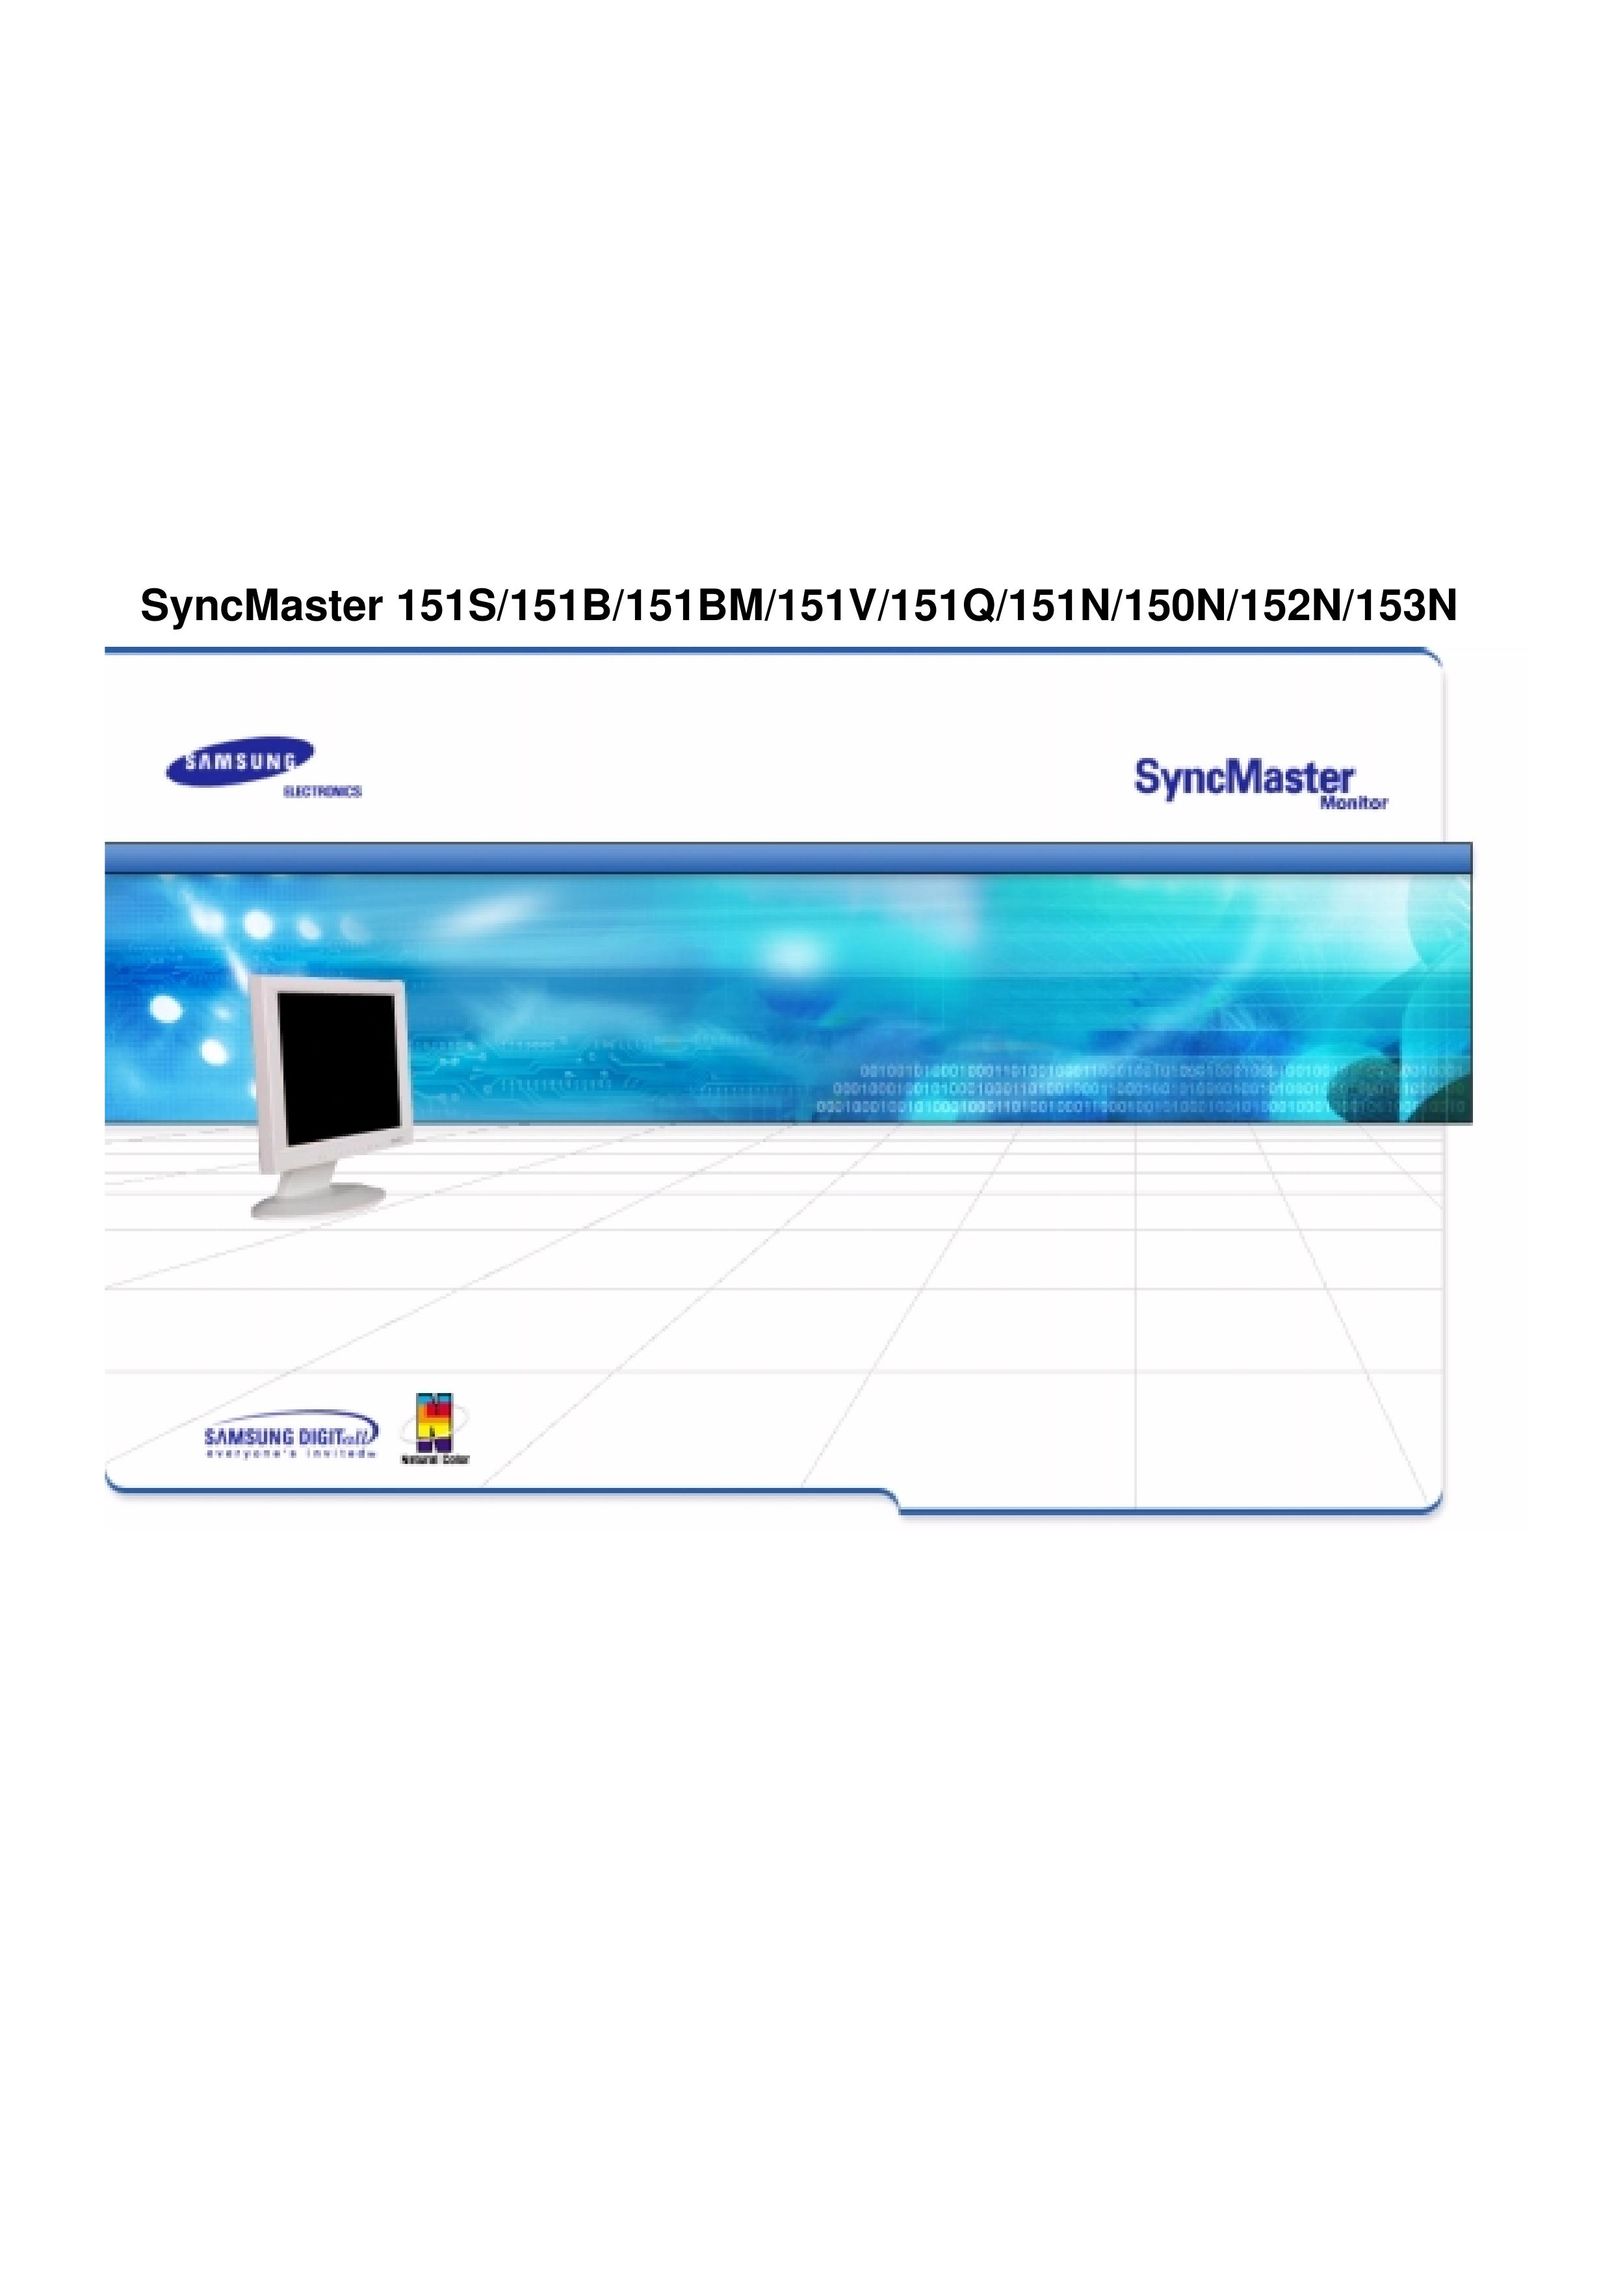 Samsung 151N Computer Monitor User Manual